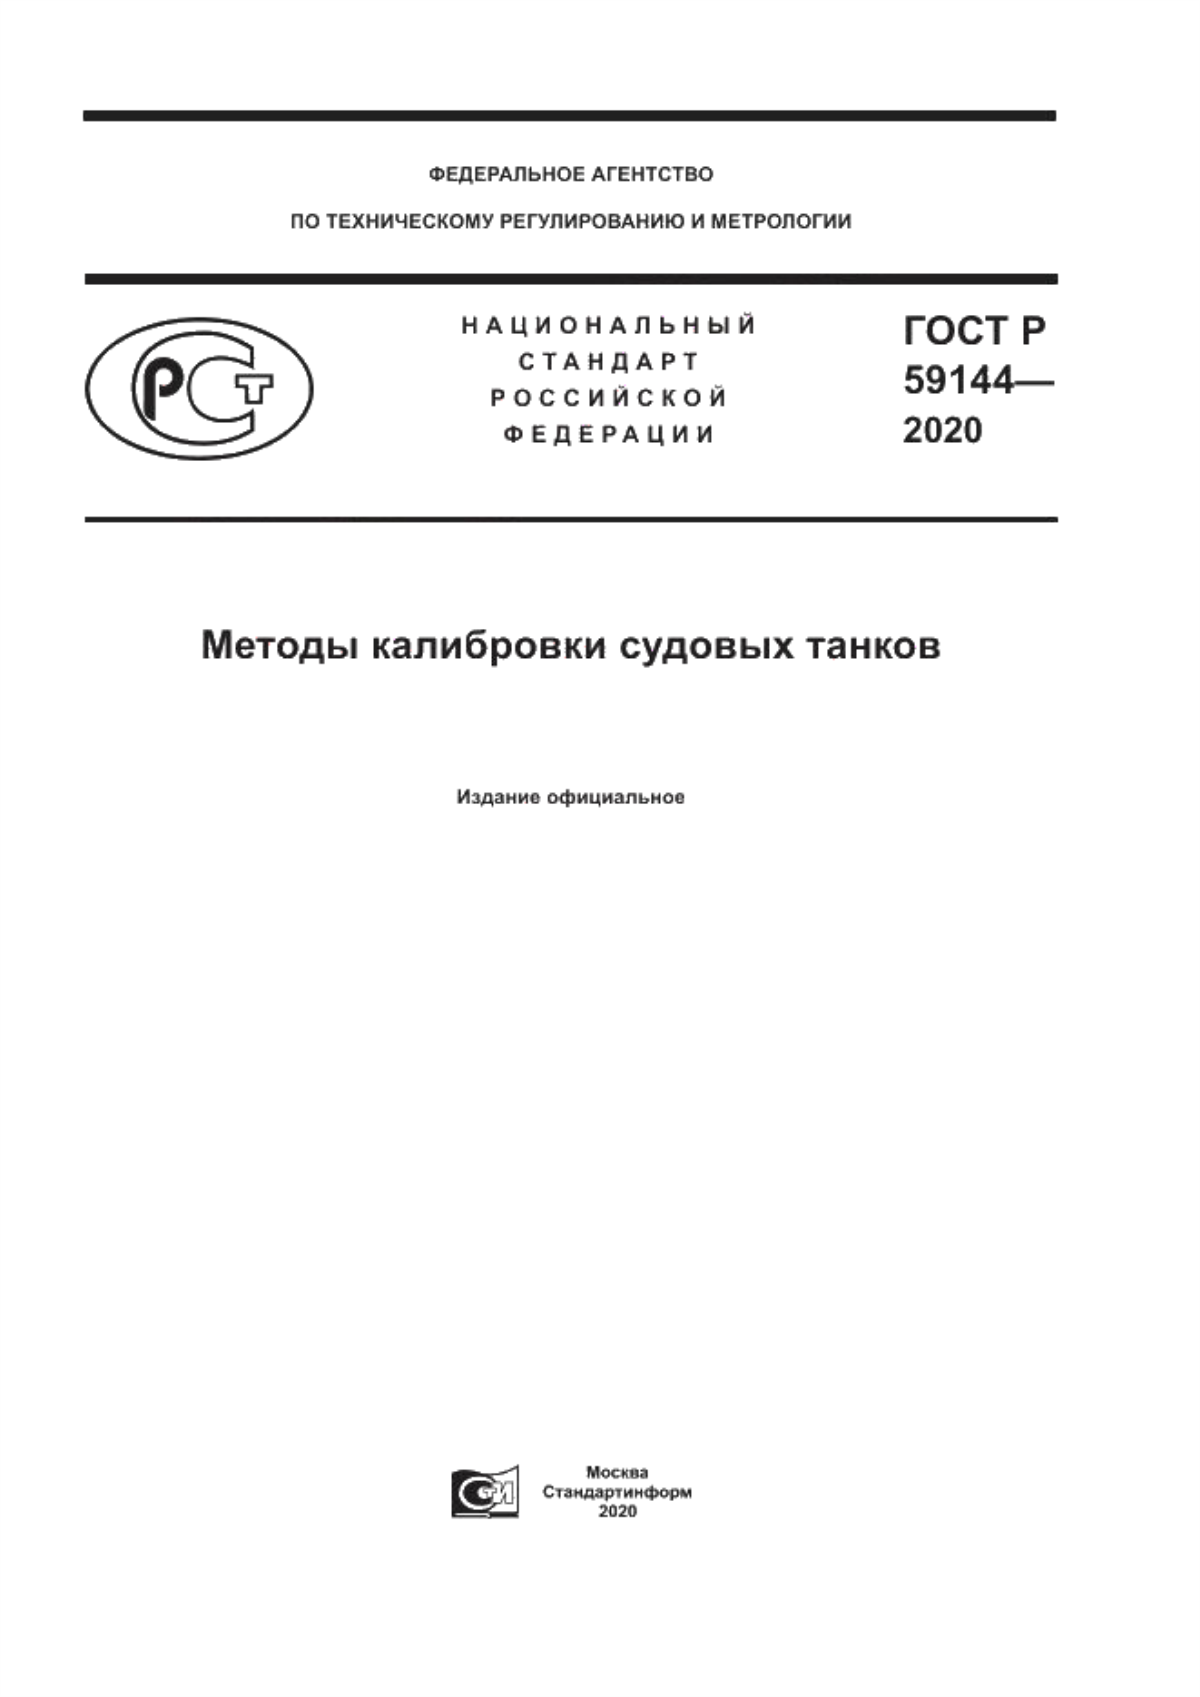 ГОСТ Р 59144-2020 Методы калибровки судовых танков